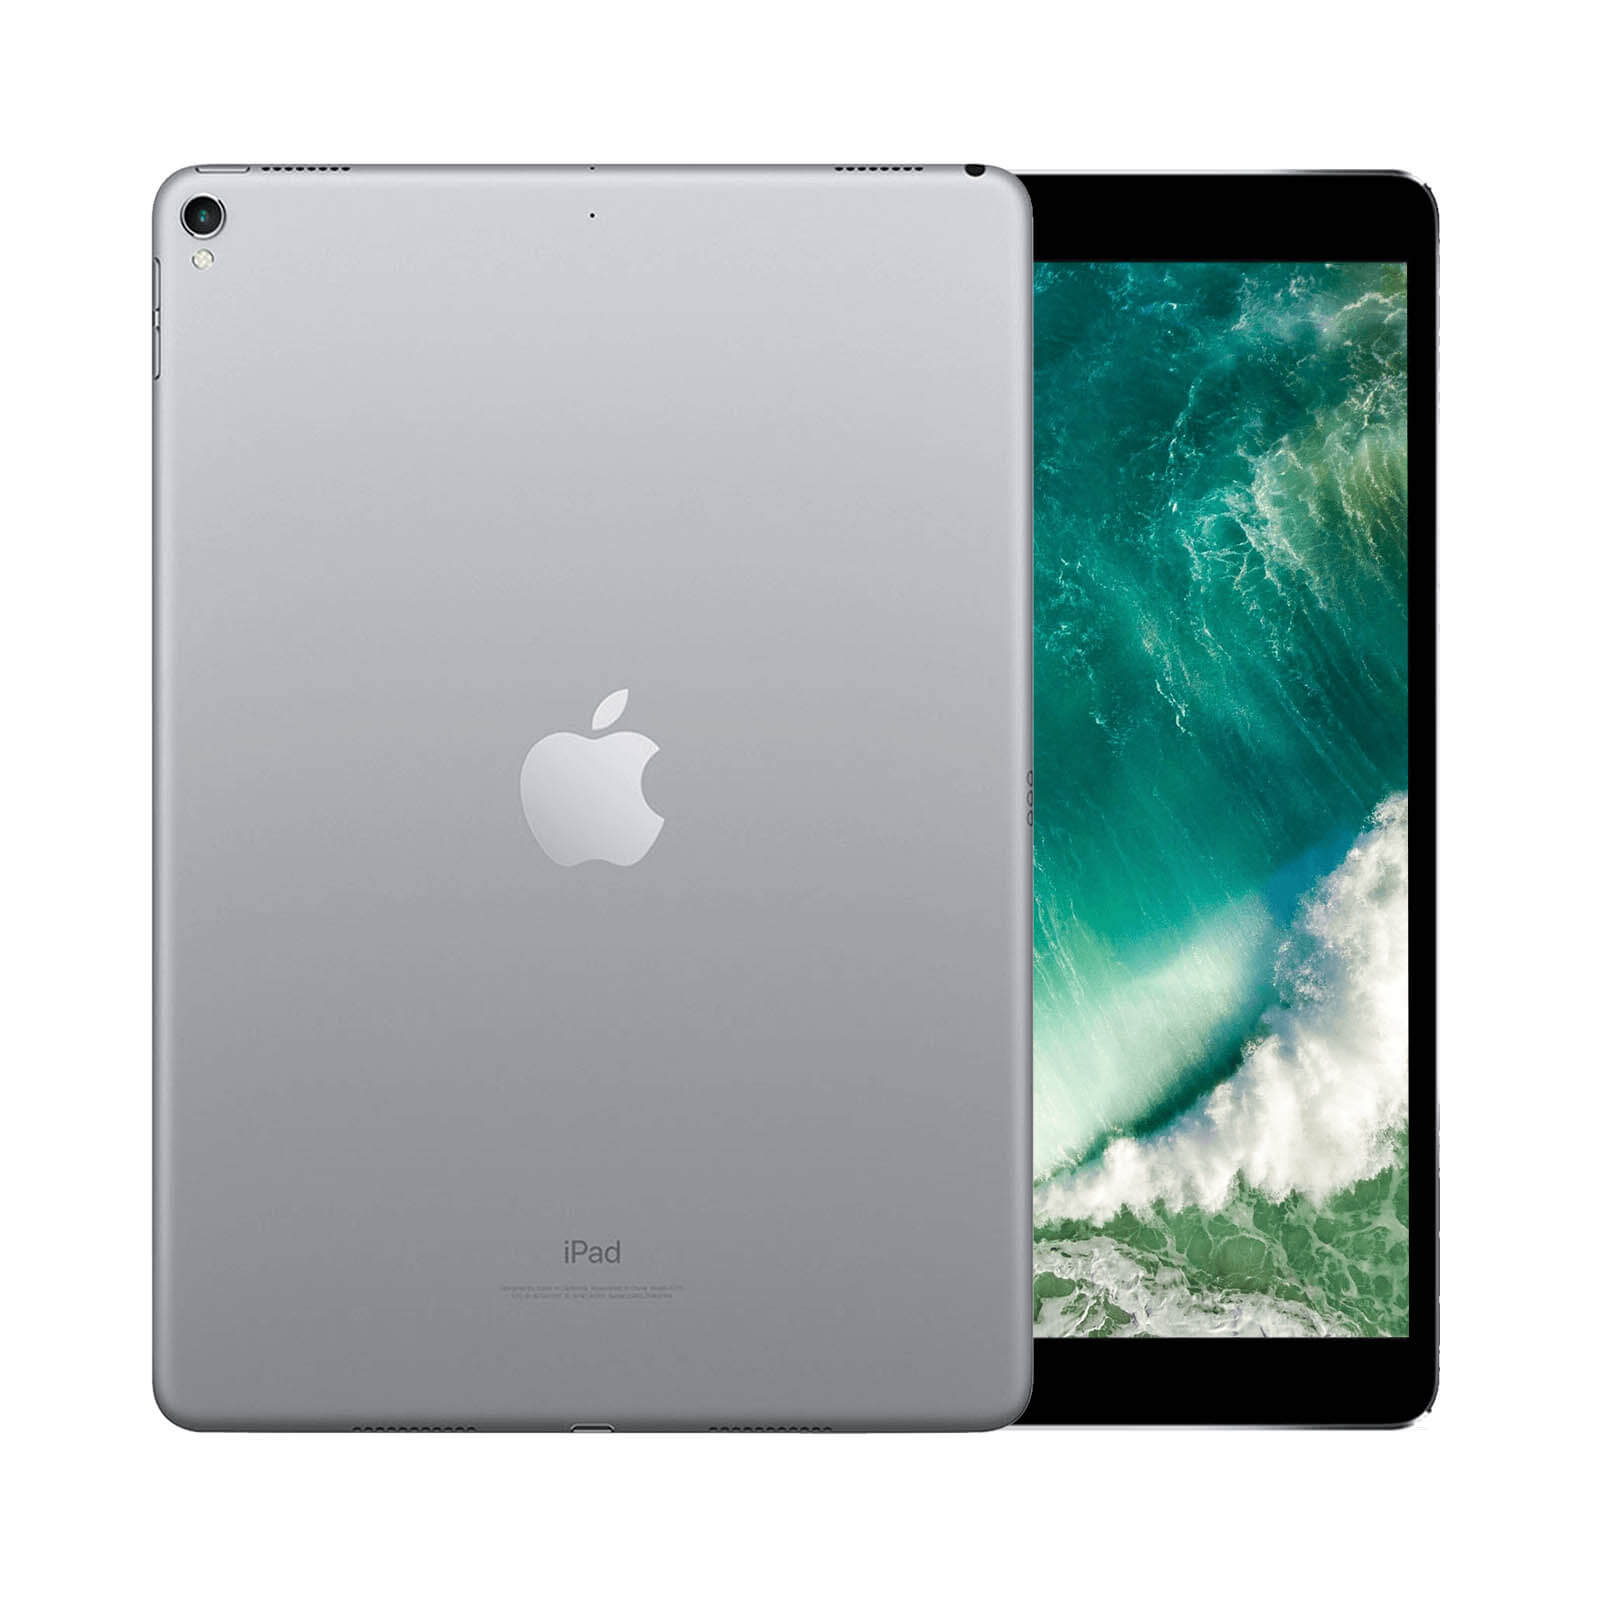 iPad Pro 10.5 Inch 256GB Rose Gold Good - WiFi